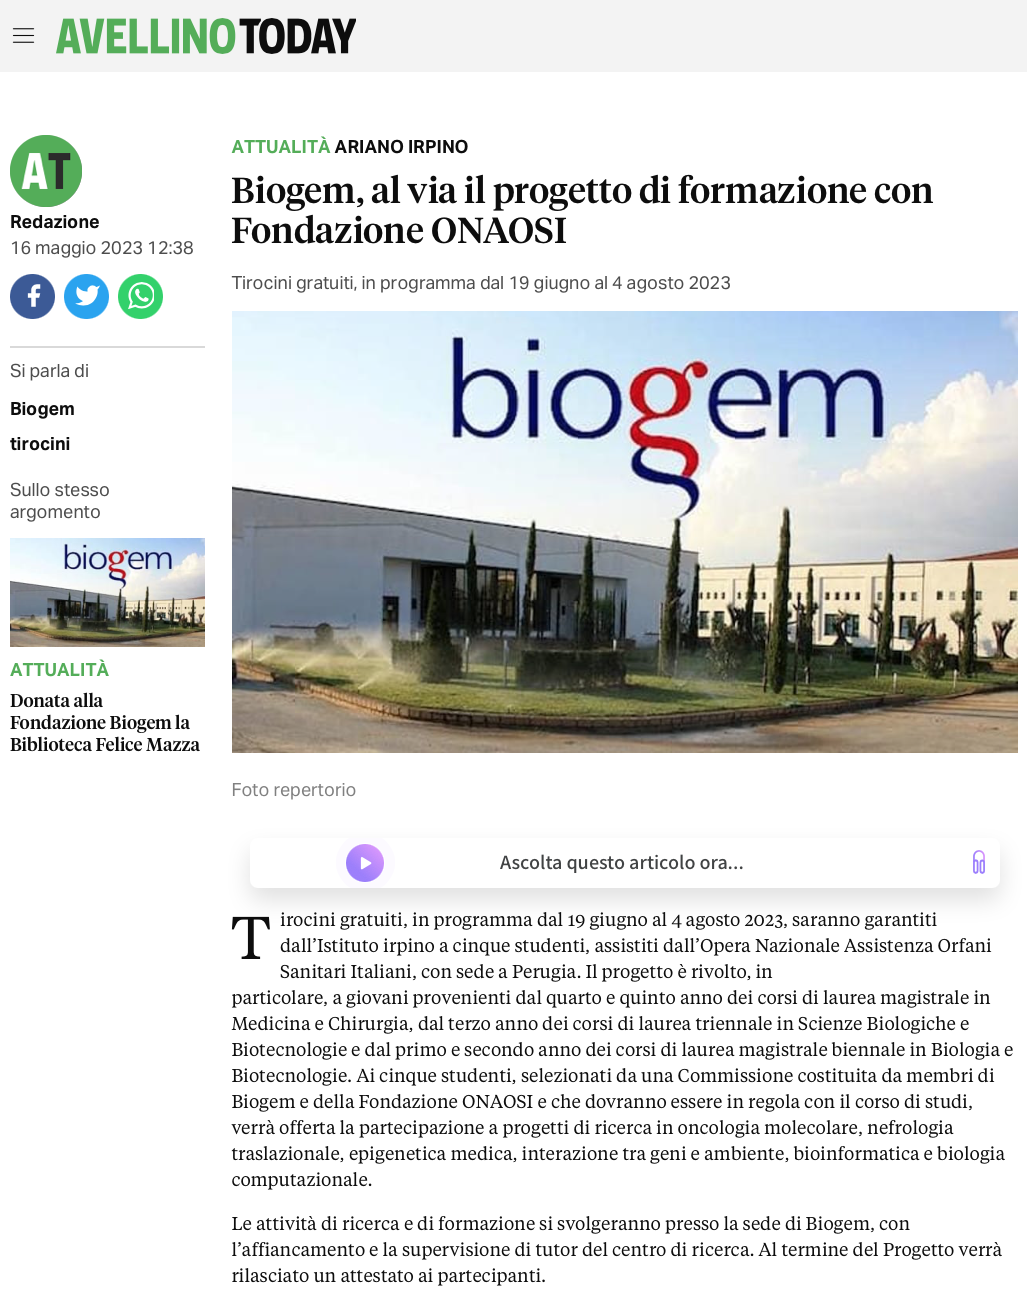 Biogem, al via il progetto di formazione con Fondazione ONAOSI